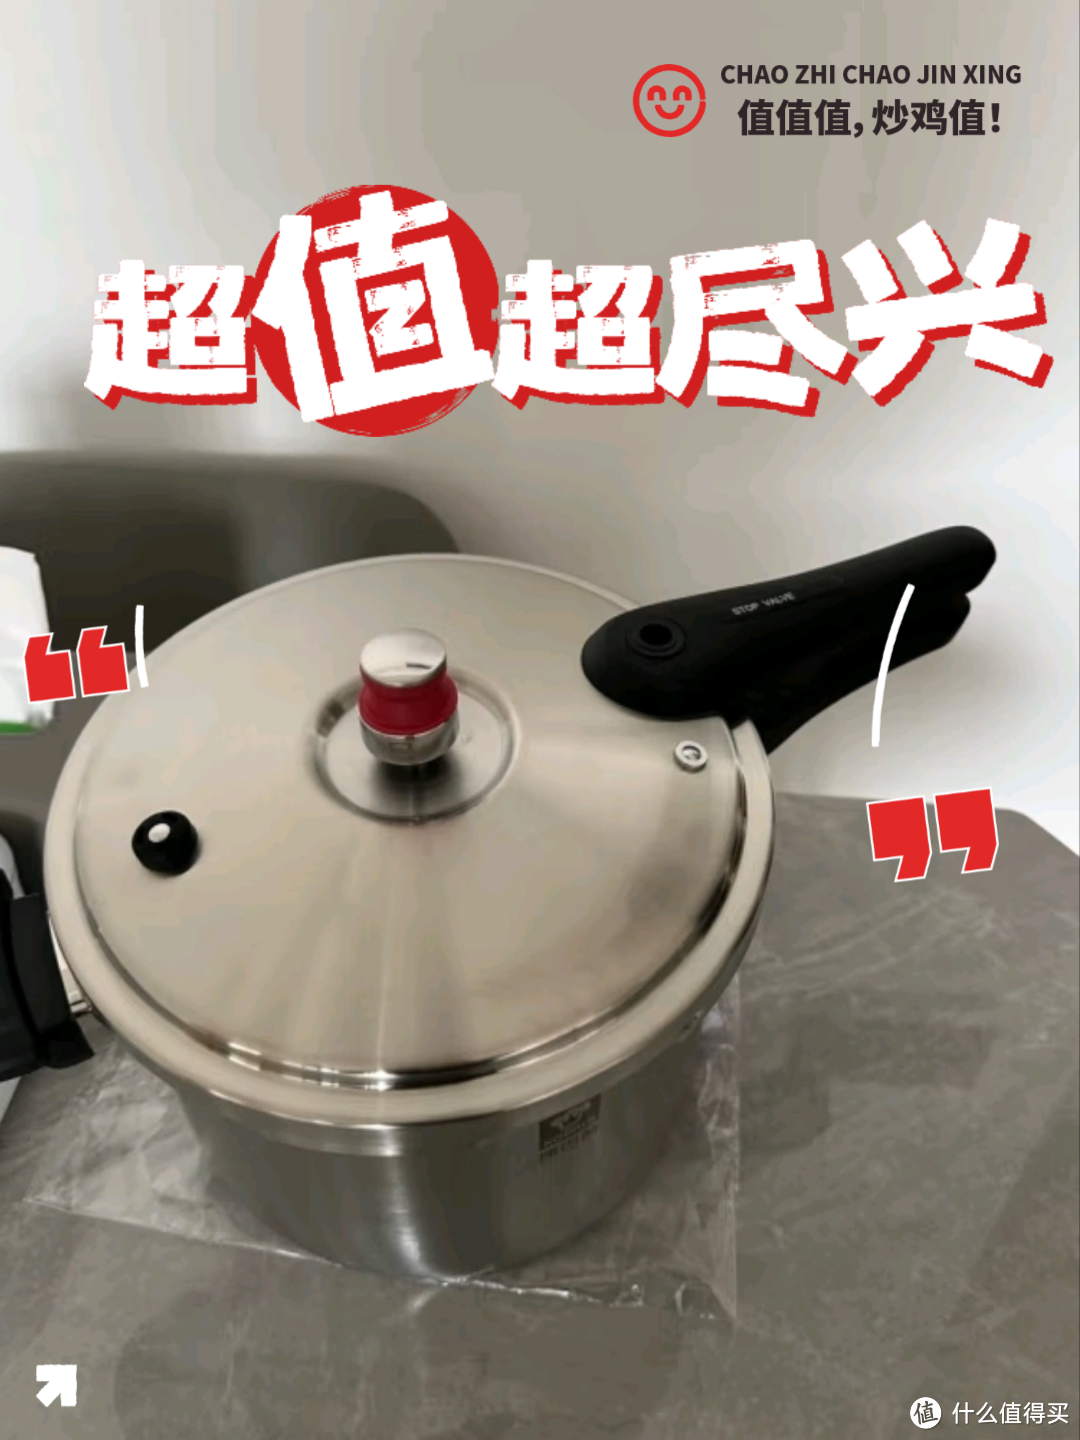 高压锅是每个家庭厨房必备的一口锅具，这款产品是不锈钢材质，安全又可靠